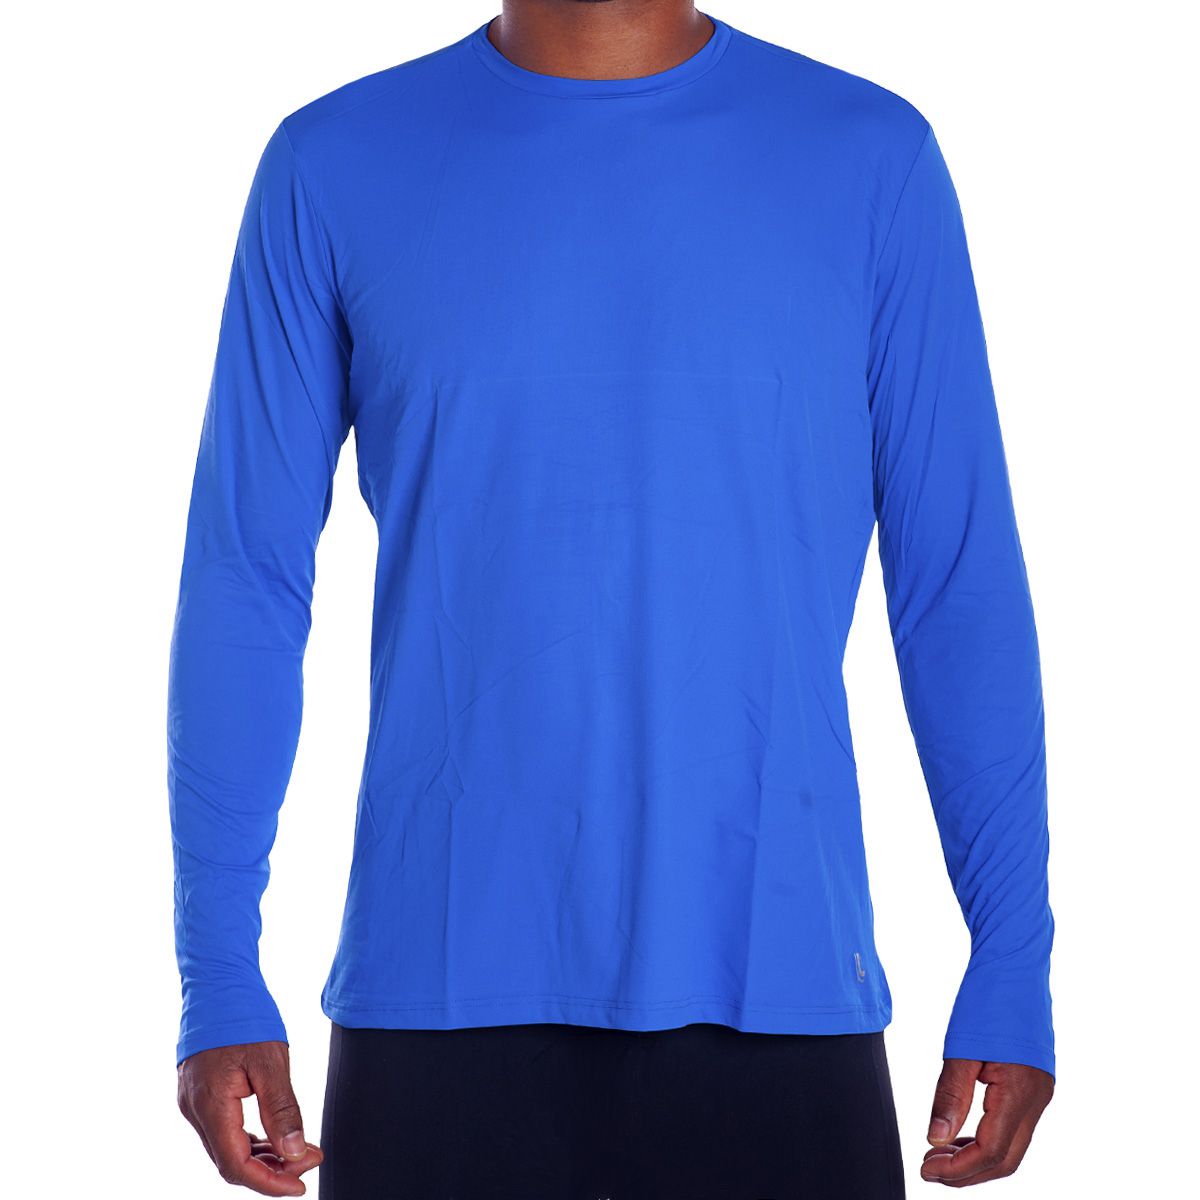 Camiseta masculina manga longa com proteção UV e repelente Lupo  - Bra Lingerie